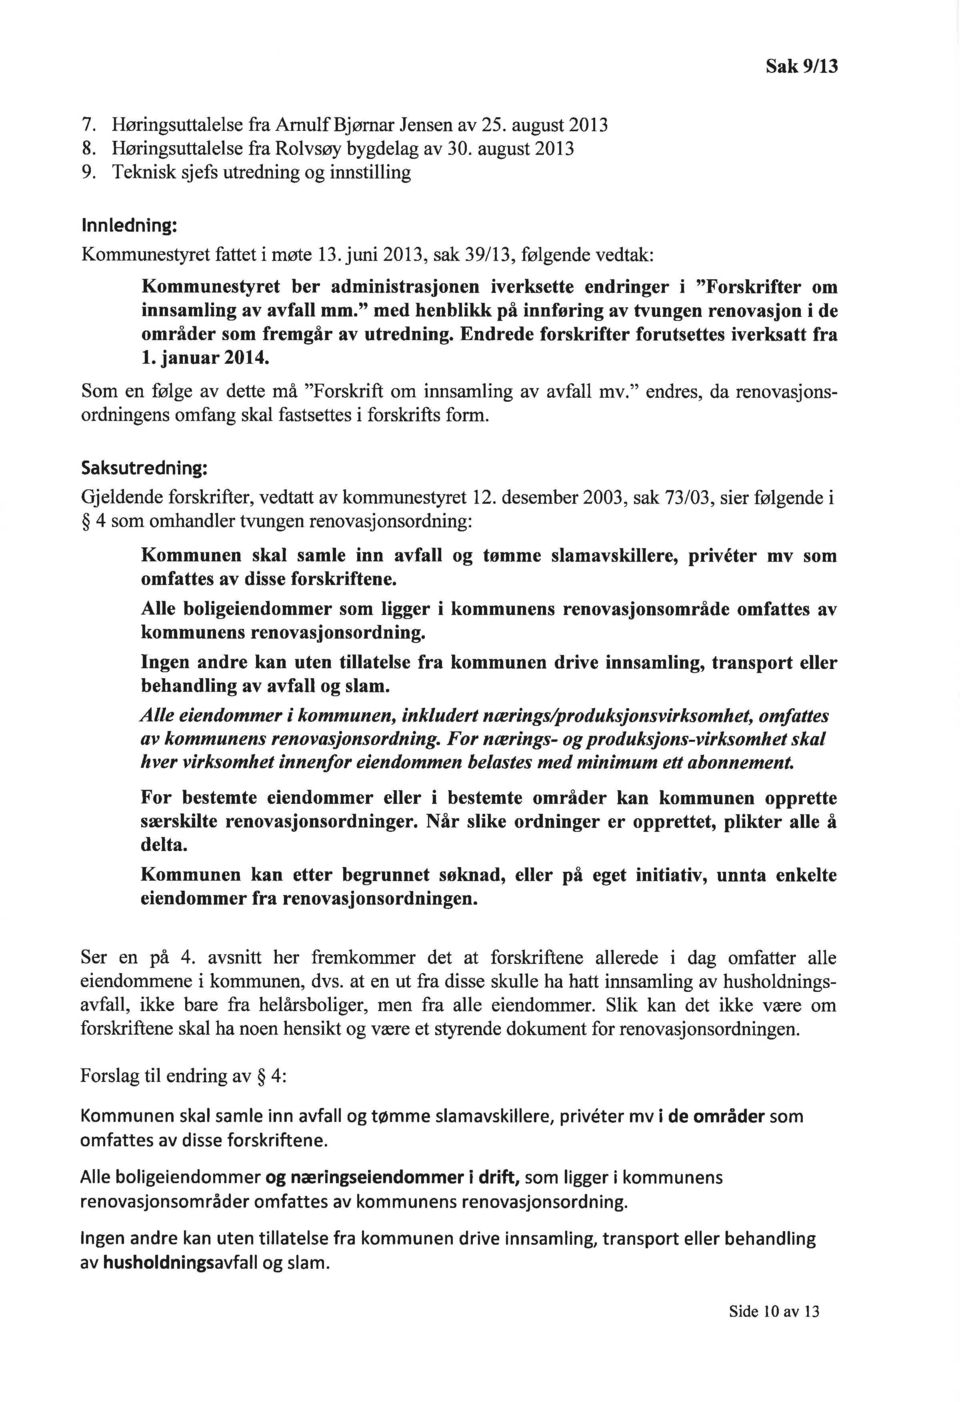 juni 2013, sak 39113, følgende vedtak: Kommunestyret ber administrasjonen iverksette endringer i "Forskrifter om innsamling av avfall mm.